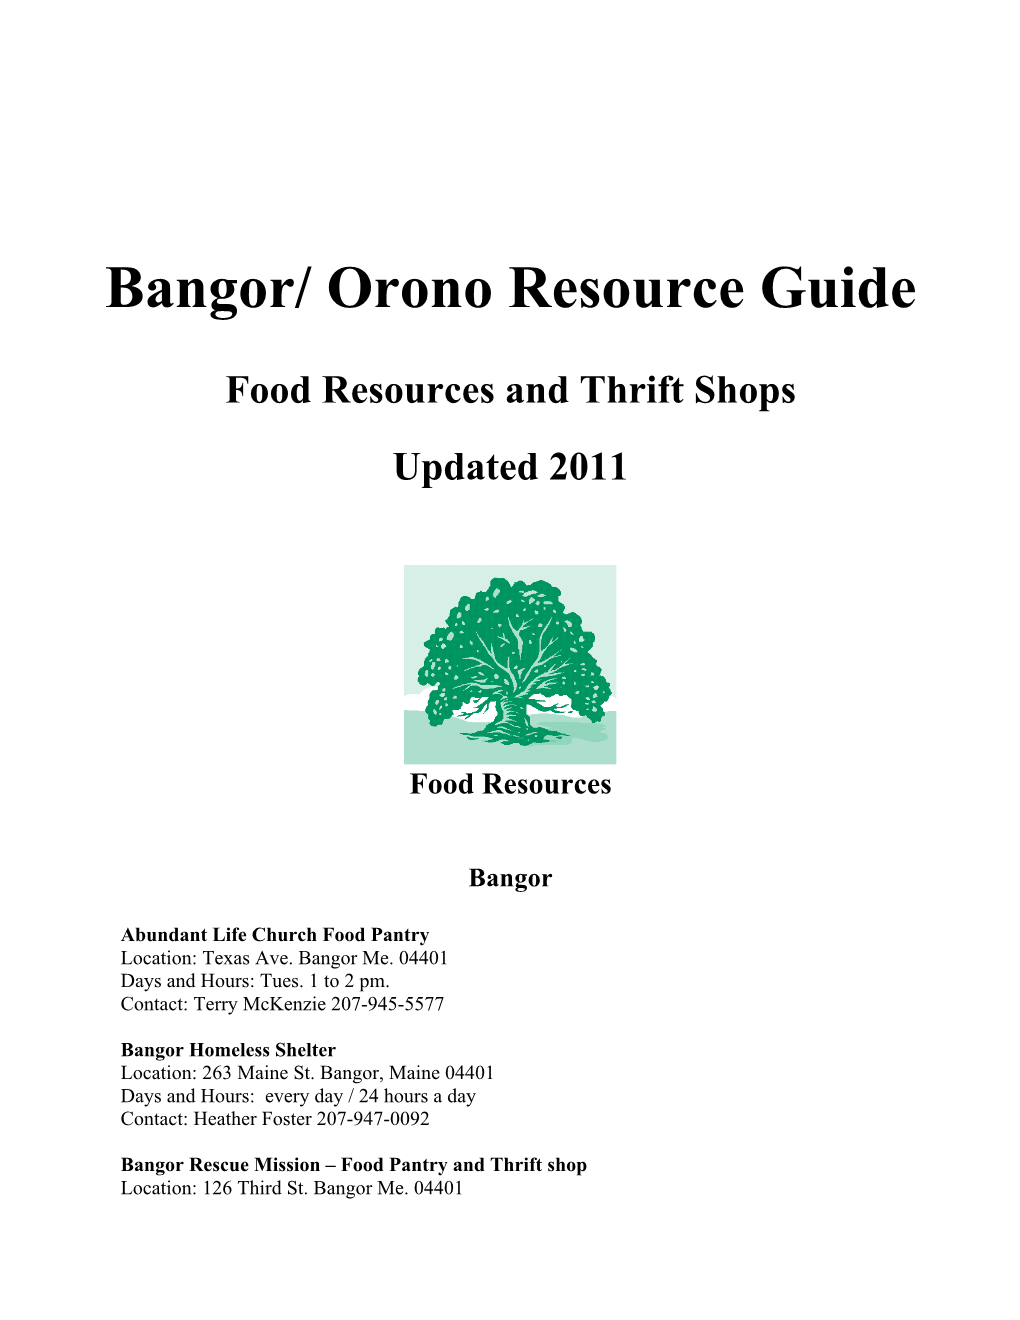 Bangor Resource Guide